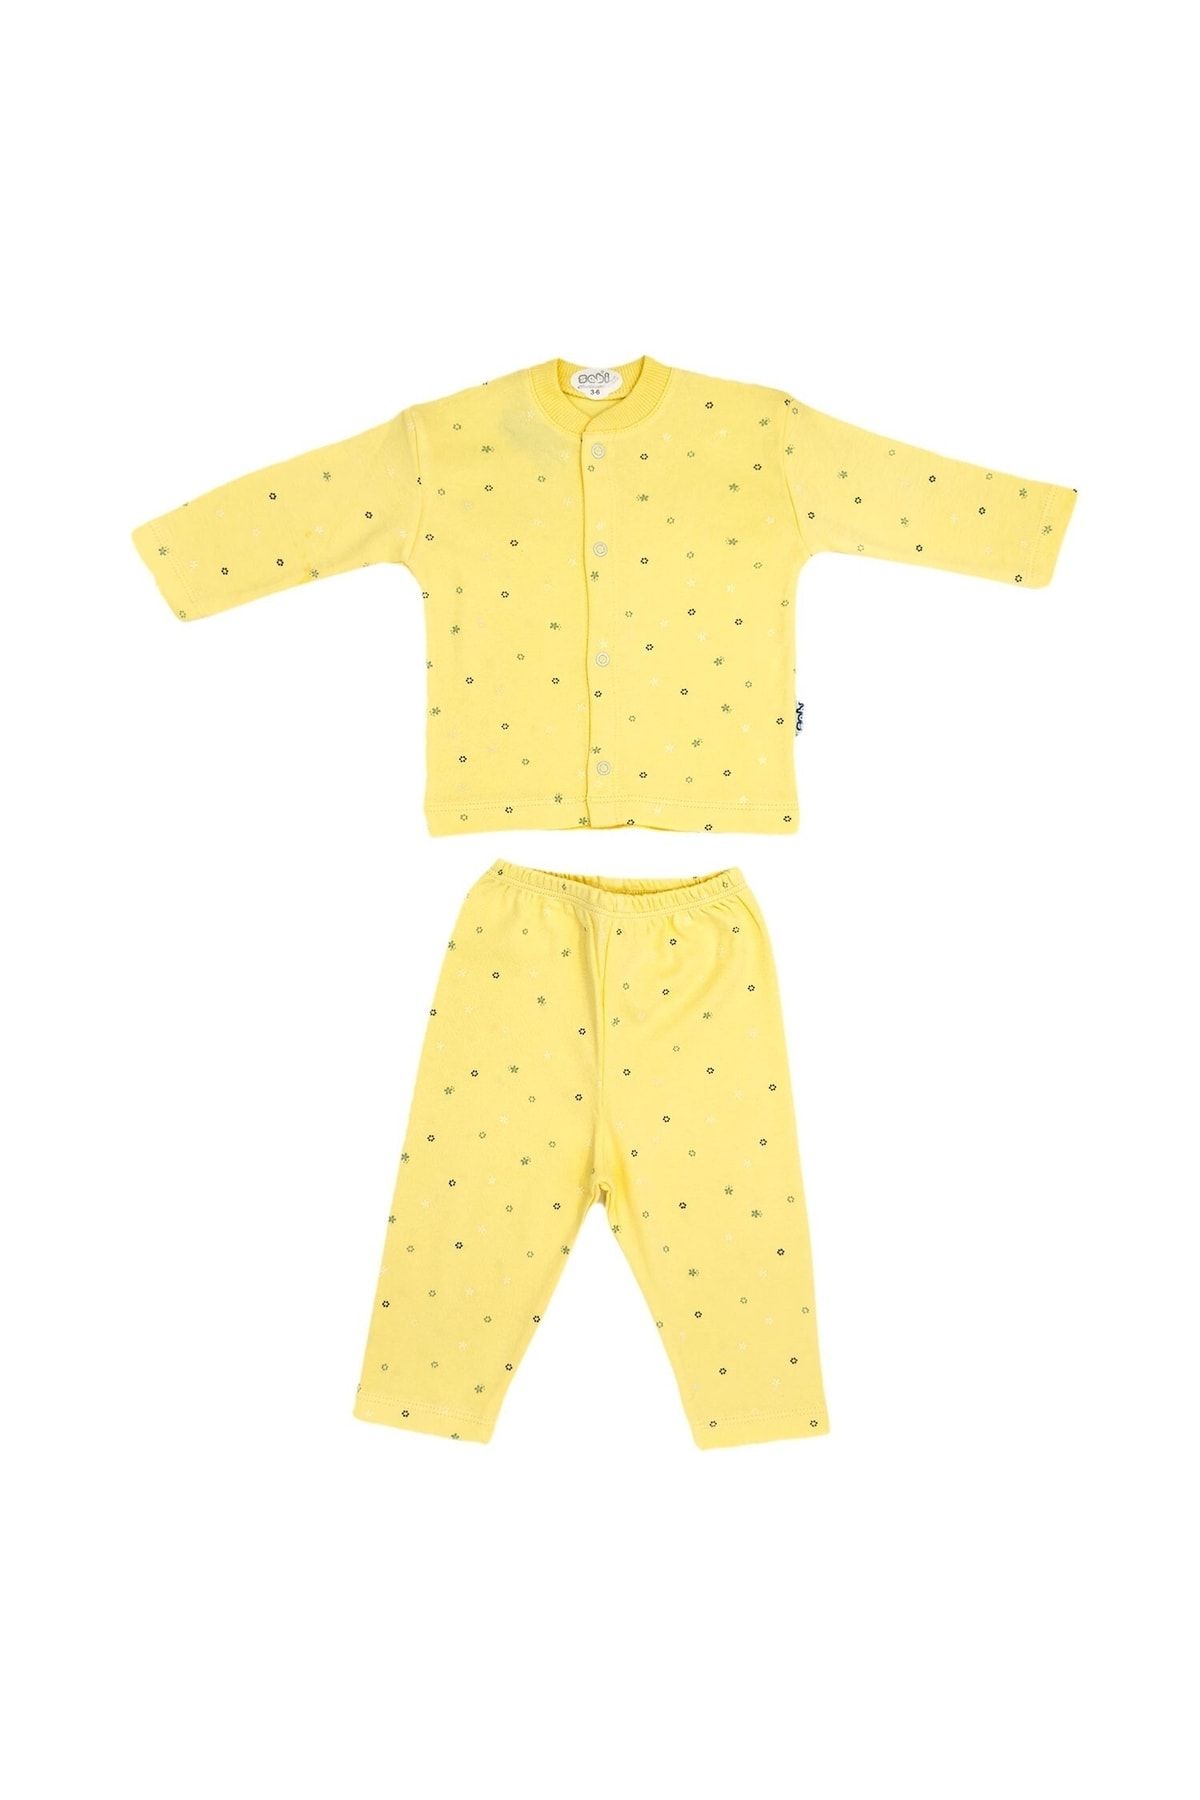 Sebi Bebe Ay Yıldız Baskılı Bebek Pijama Takımı 2331